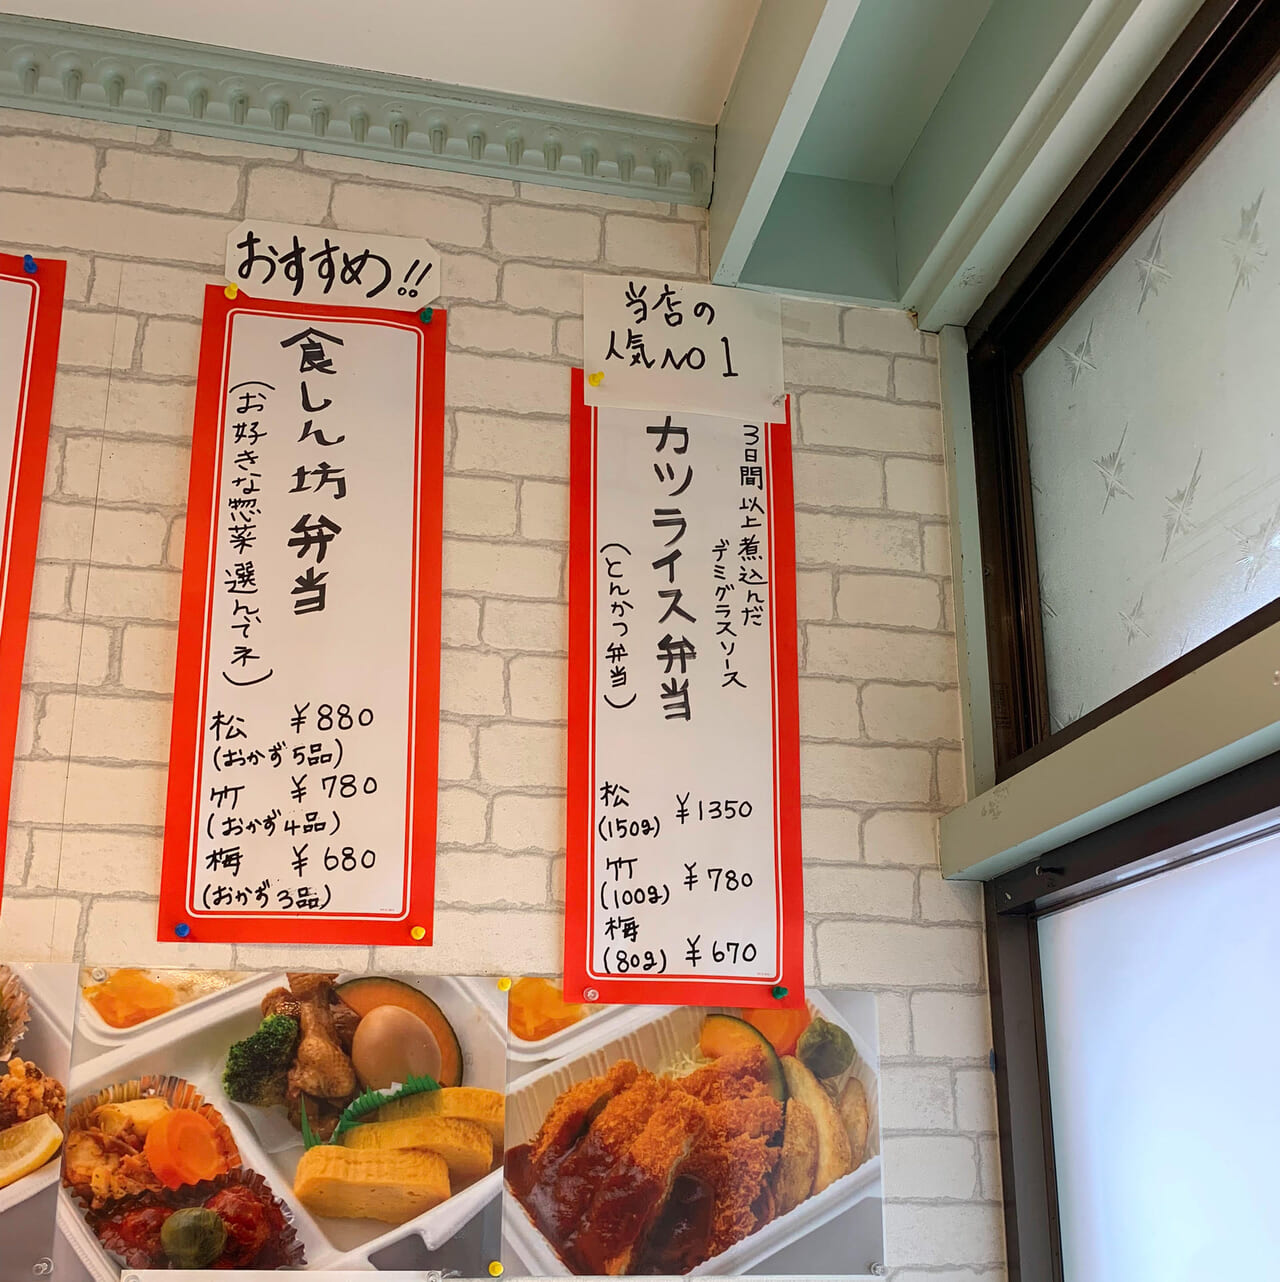 ビュッフェ形式が人気のお弁当屋さん「まんぷく亭食いしん坊」のカツライス弁当を食べてみました!!